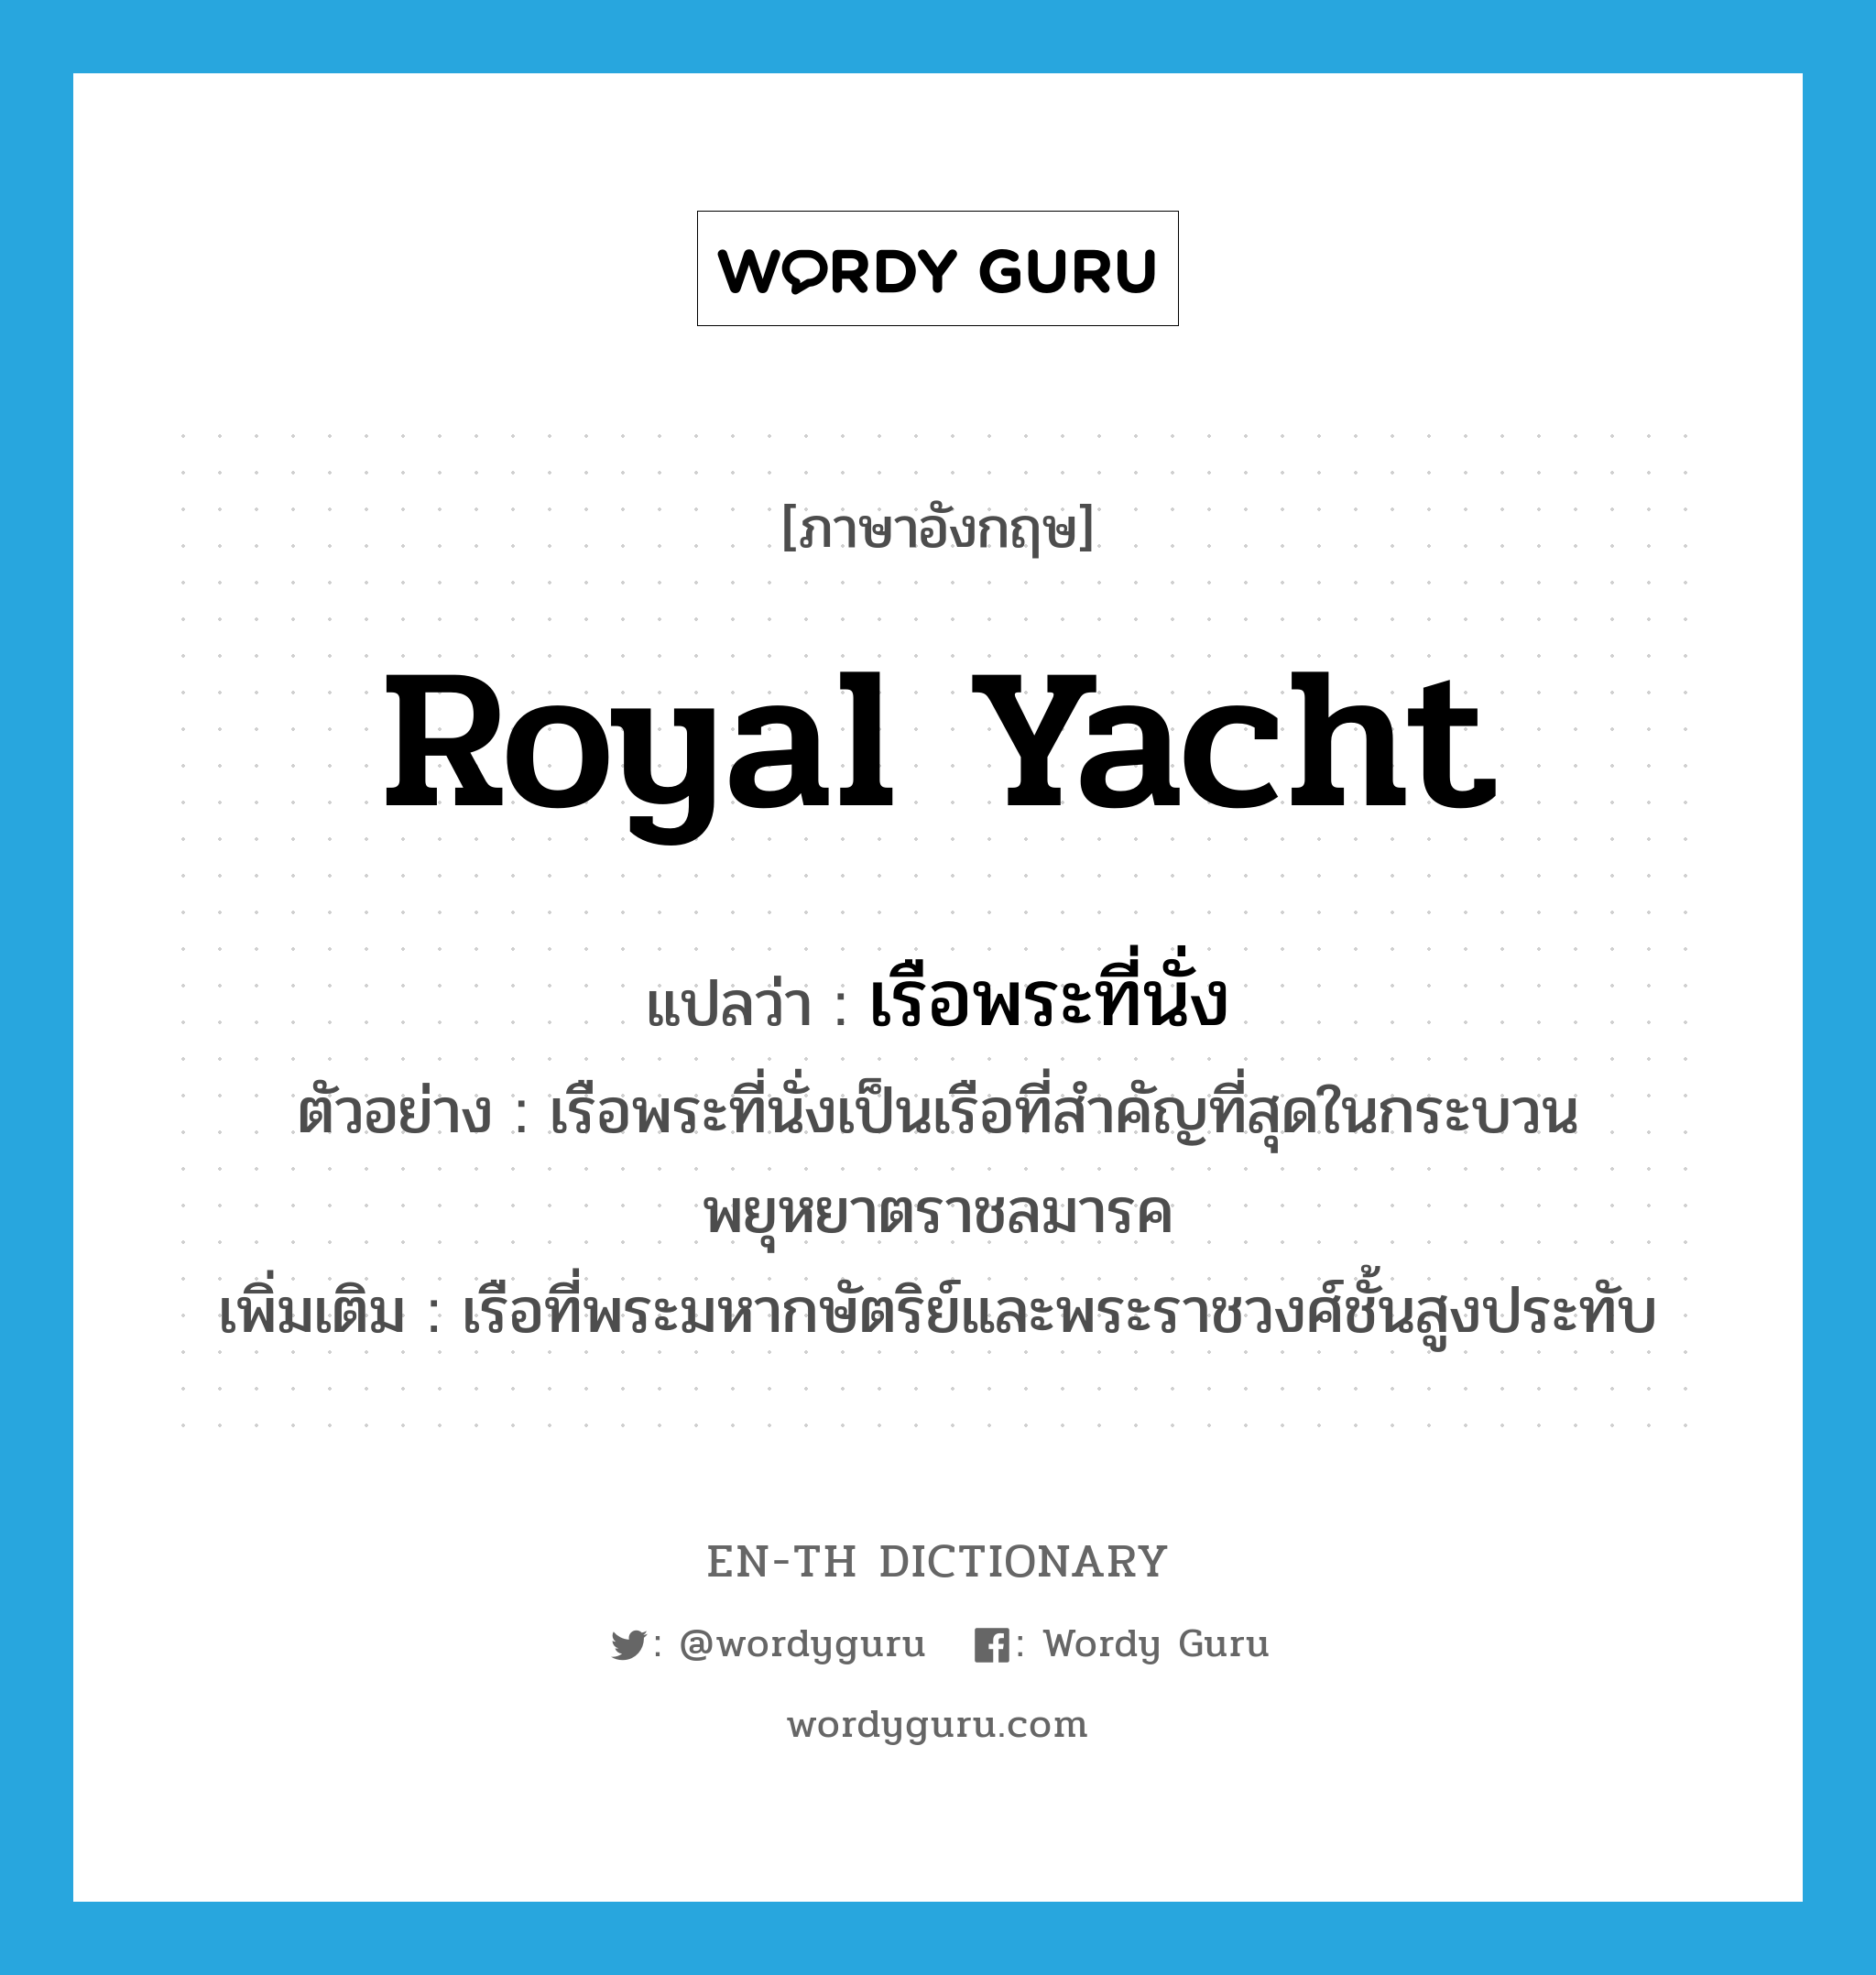 royal yacht แปลว่า?, คำศัพท์ภาษาอังกฤษ royal yacht แปลว่า เรือพระที่นั่ง ประเภท N ตัวอย่าง เรือพระที่นั่งเป็นเรือที่สำคัญที่สุดในกระบวนพยุหยาตราชลมารค เพิ่มเติม เรือที่พระมหากษัตริย์และพระราชวงศ์ชั้นสูงประทับ หมวด N